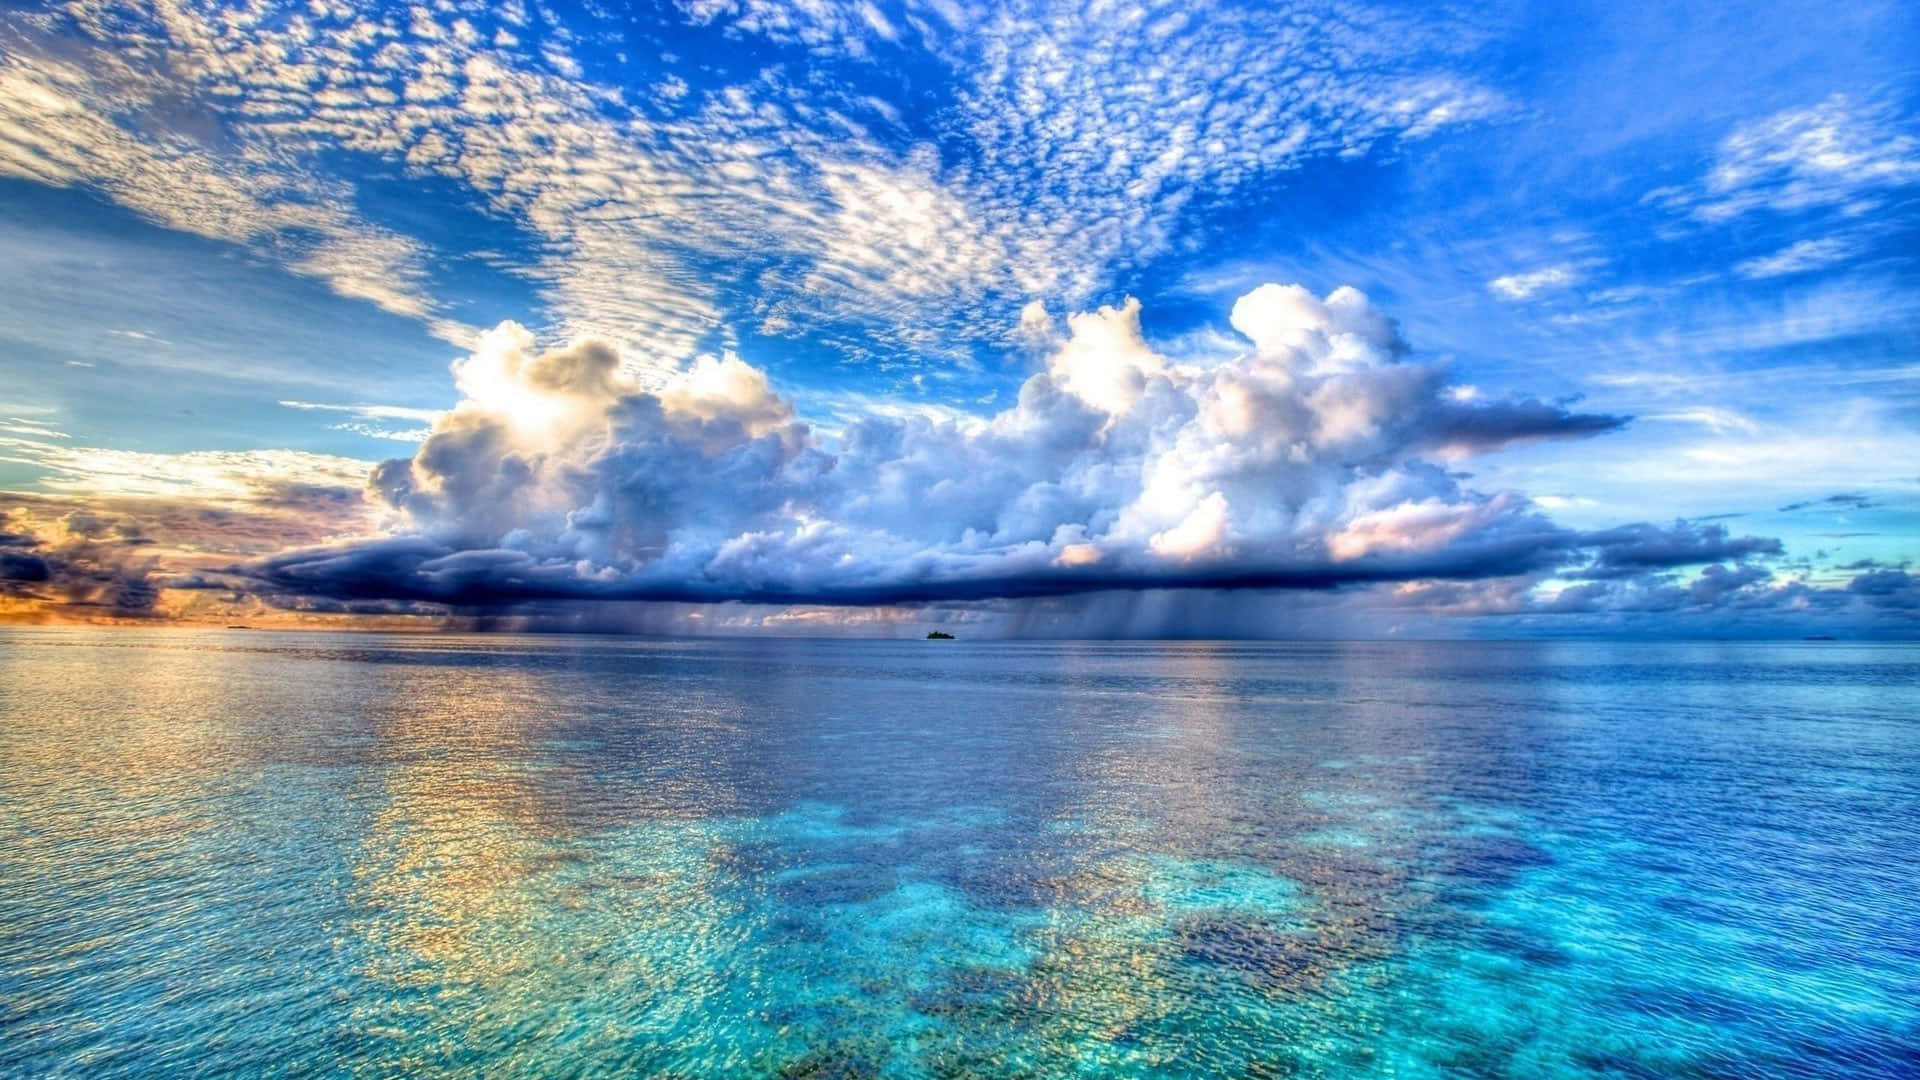 A Cloudy Sky Over The Ocean Wallpaper